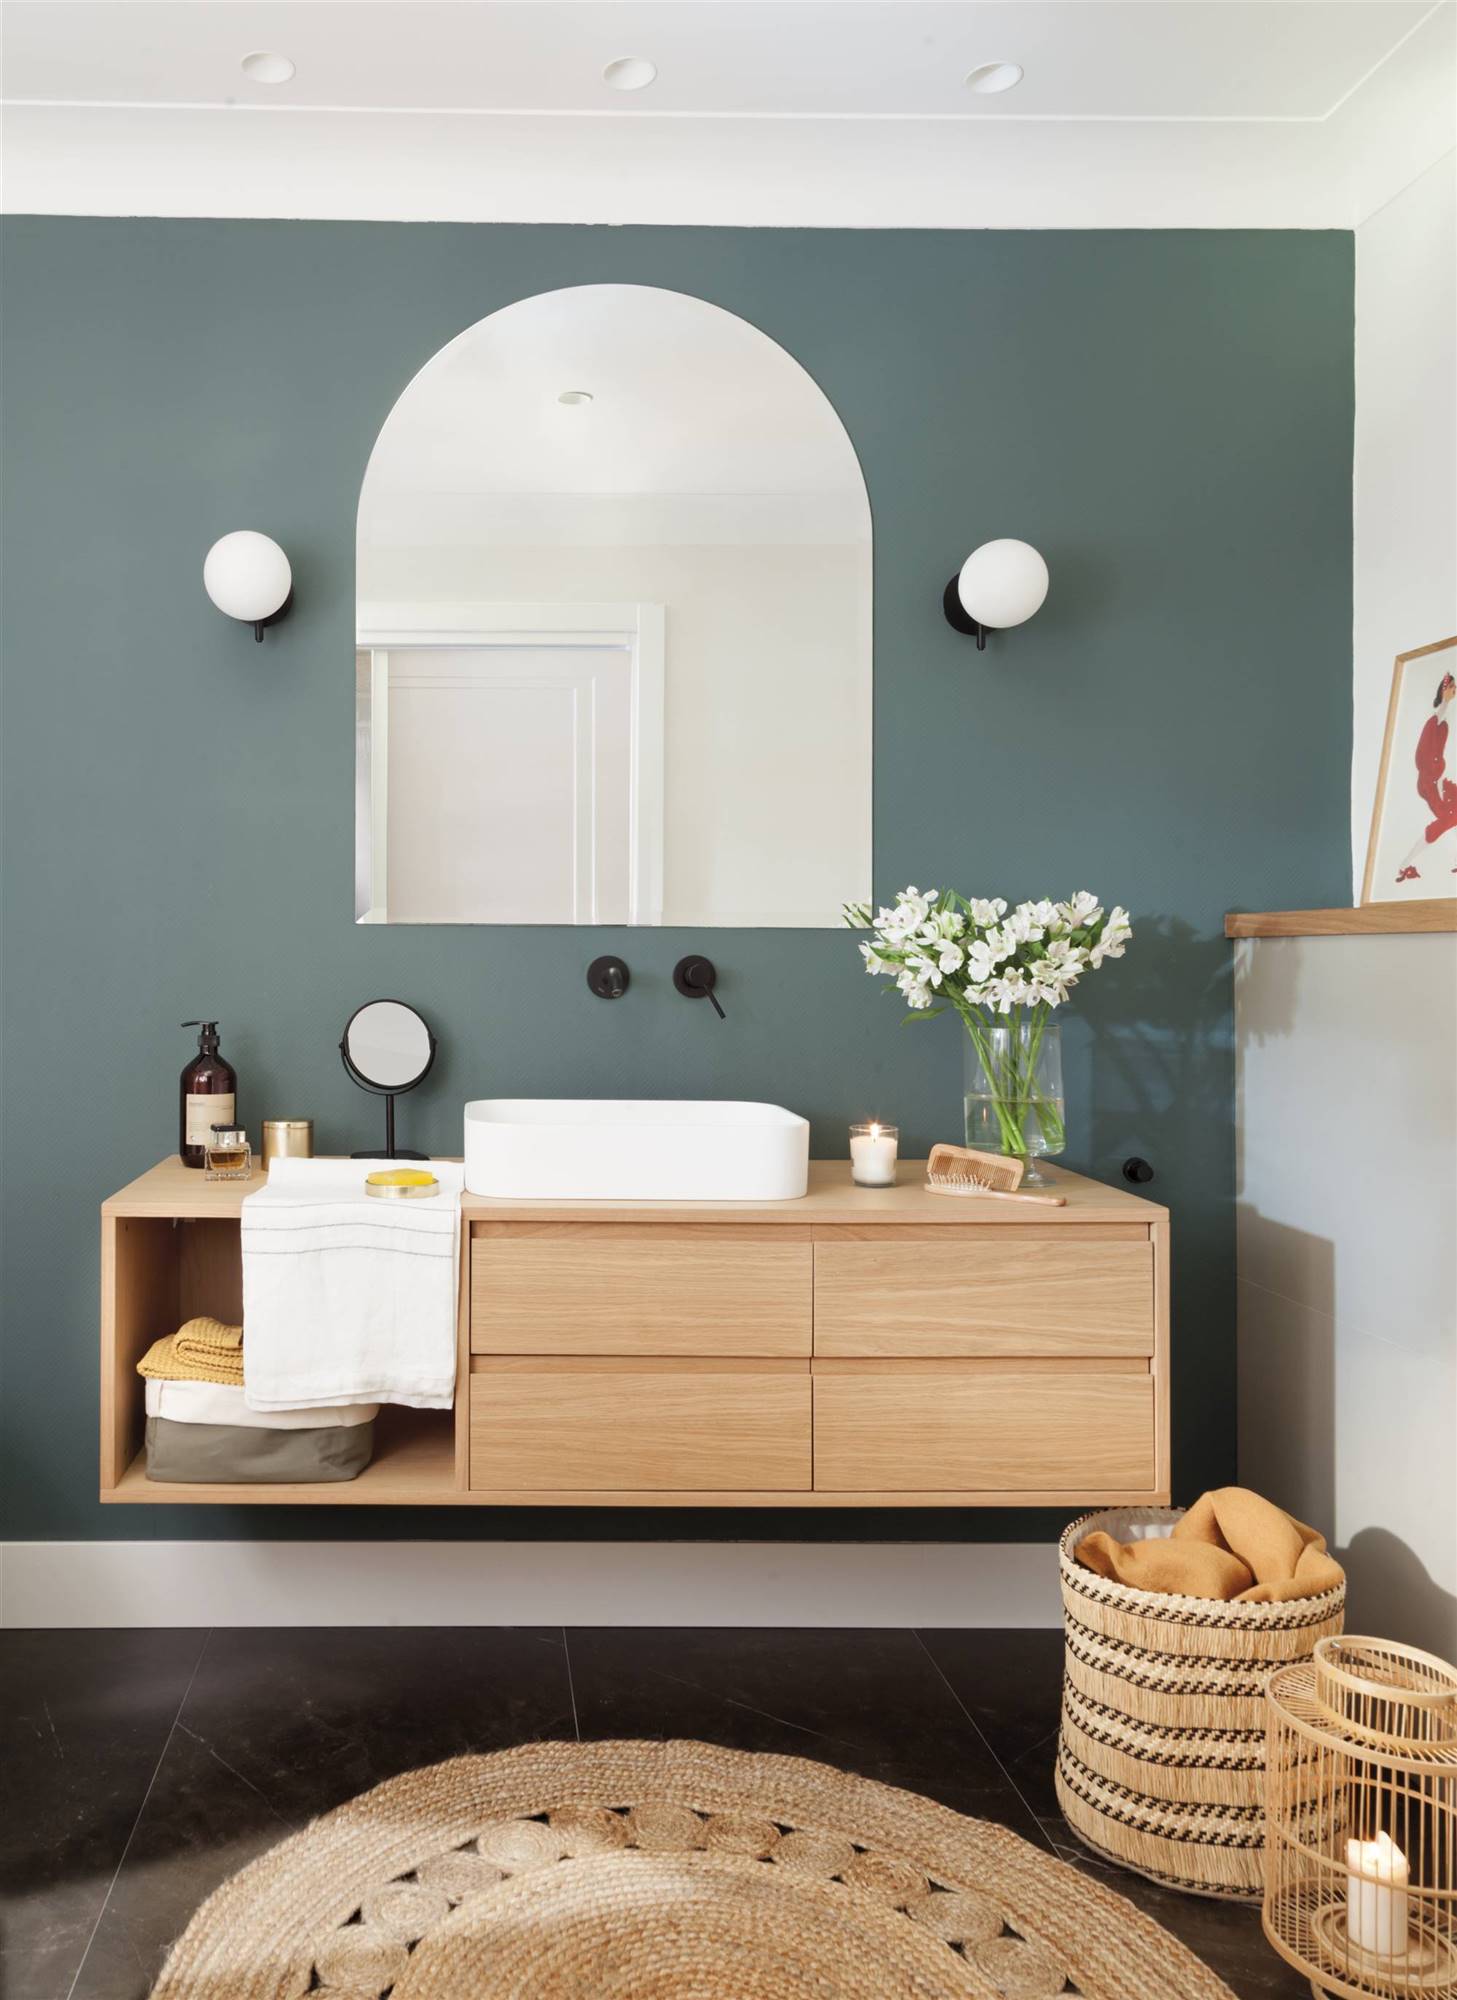 Baño moderno con mueble bajolavabo de madera, grifería empotrada de color negro mate y alfombra de fibras naturales